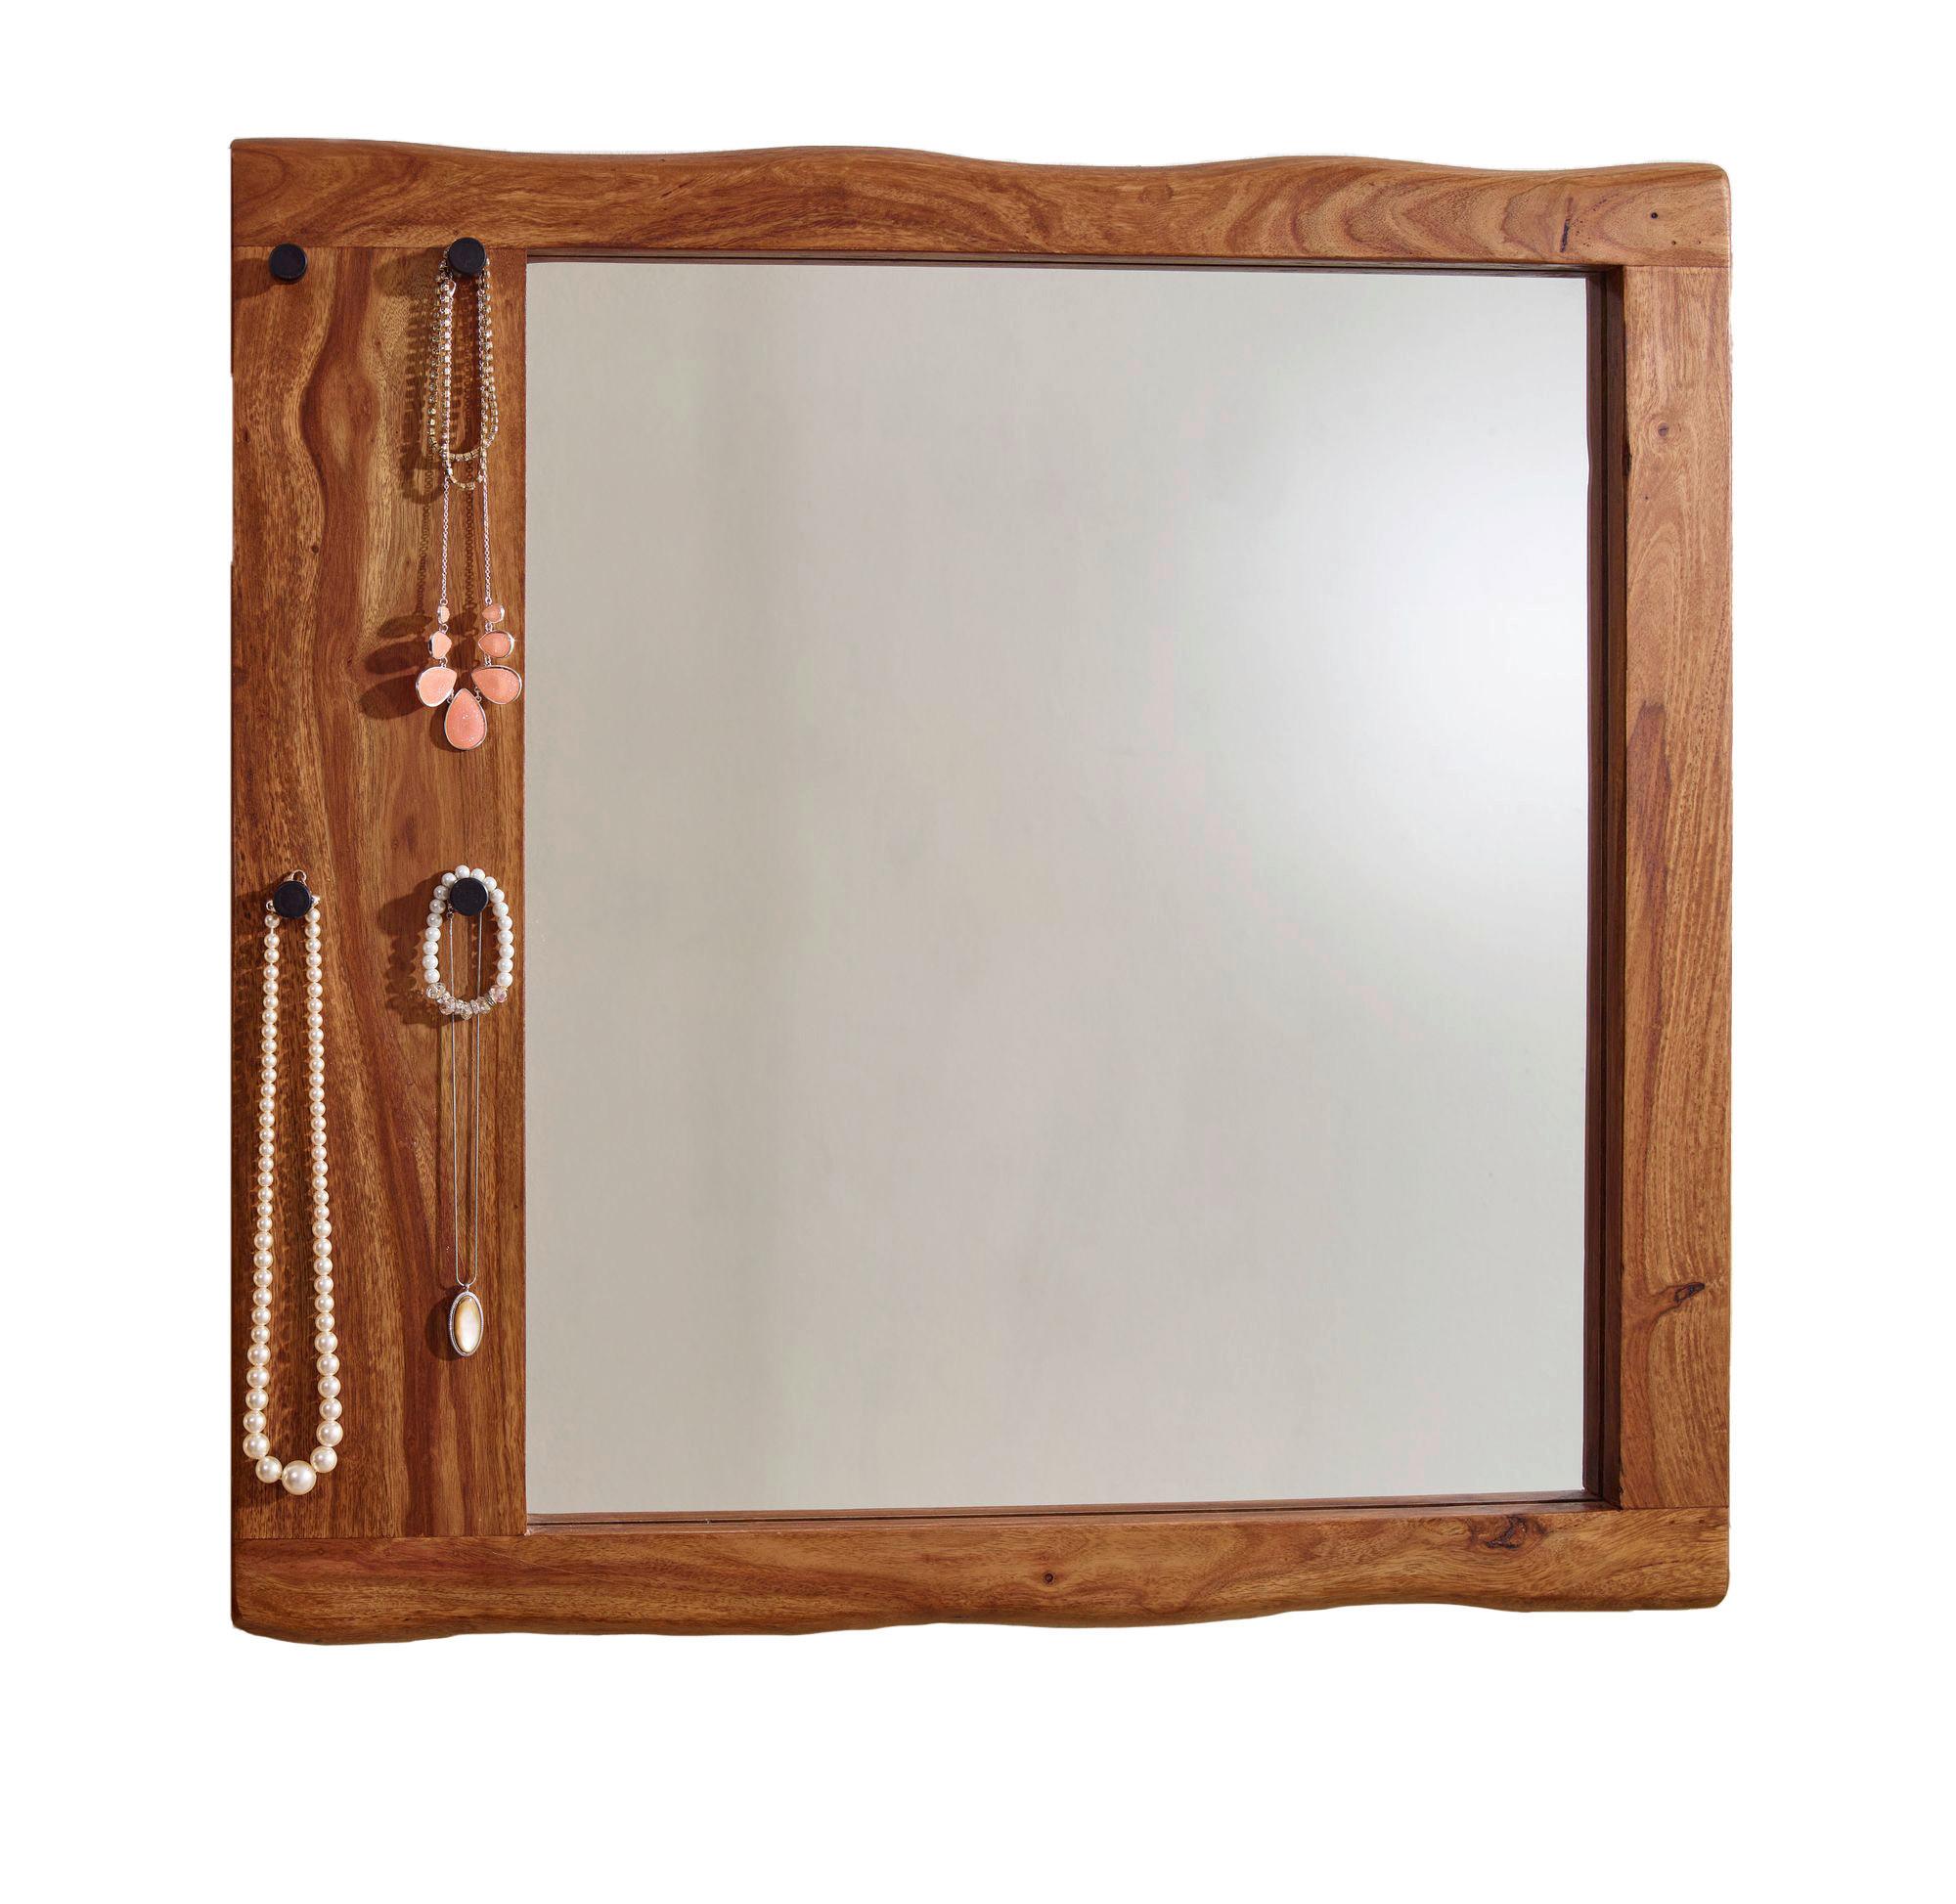 Zrcadlo V Masivním Dřevěnem Rámě Š: 80 Cm - barvy sheesham, Moderní, dřevo/sklo (80/80/3cm) - MID.YOU